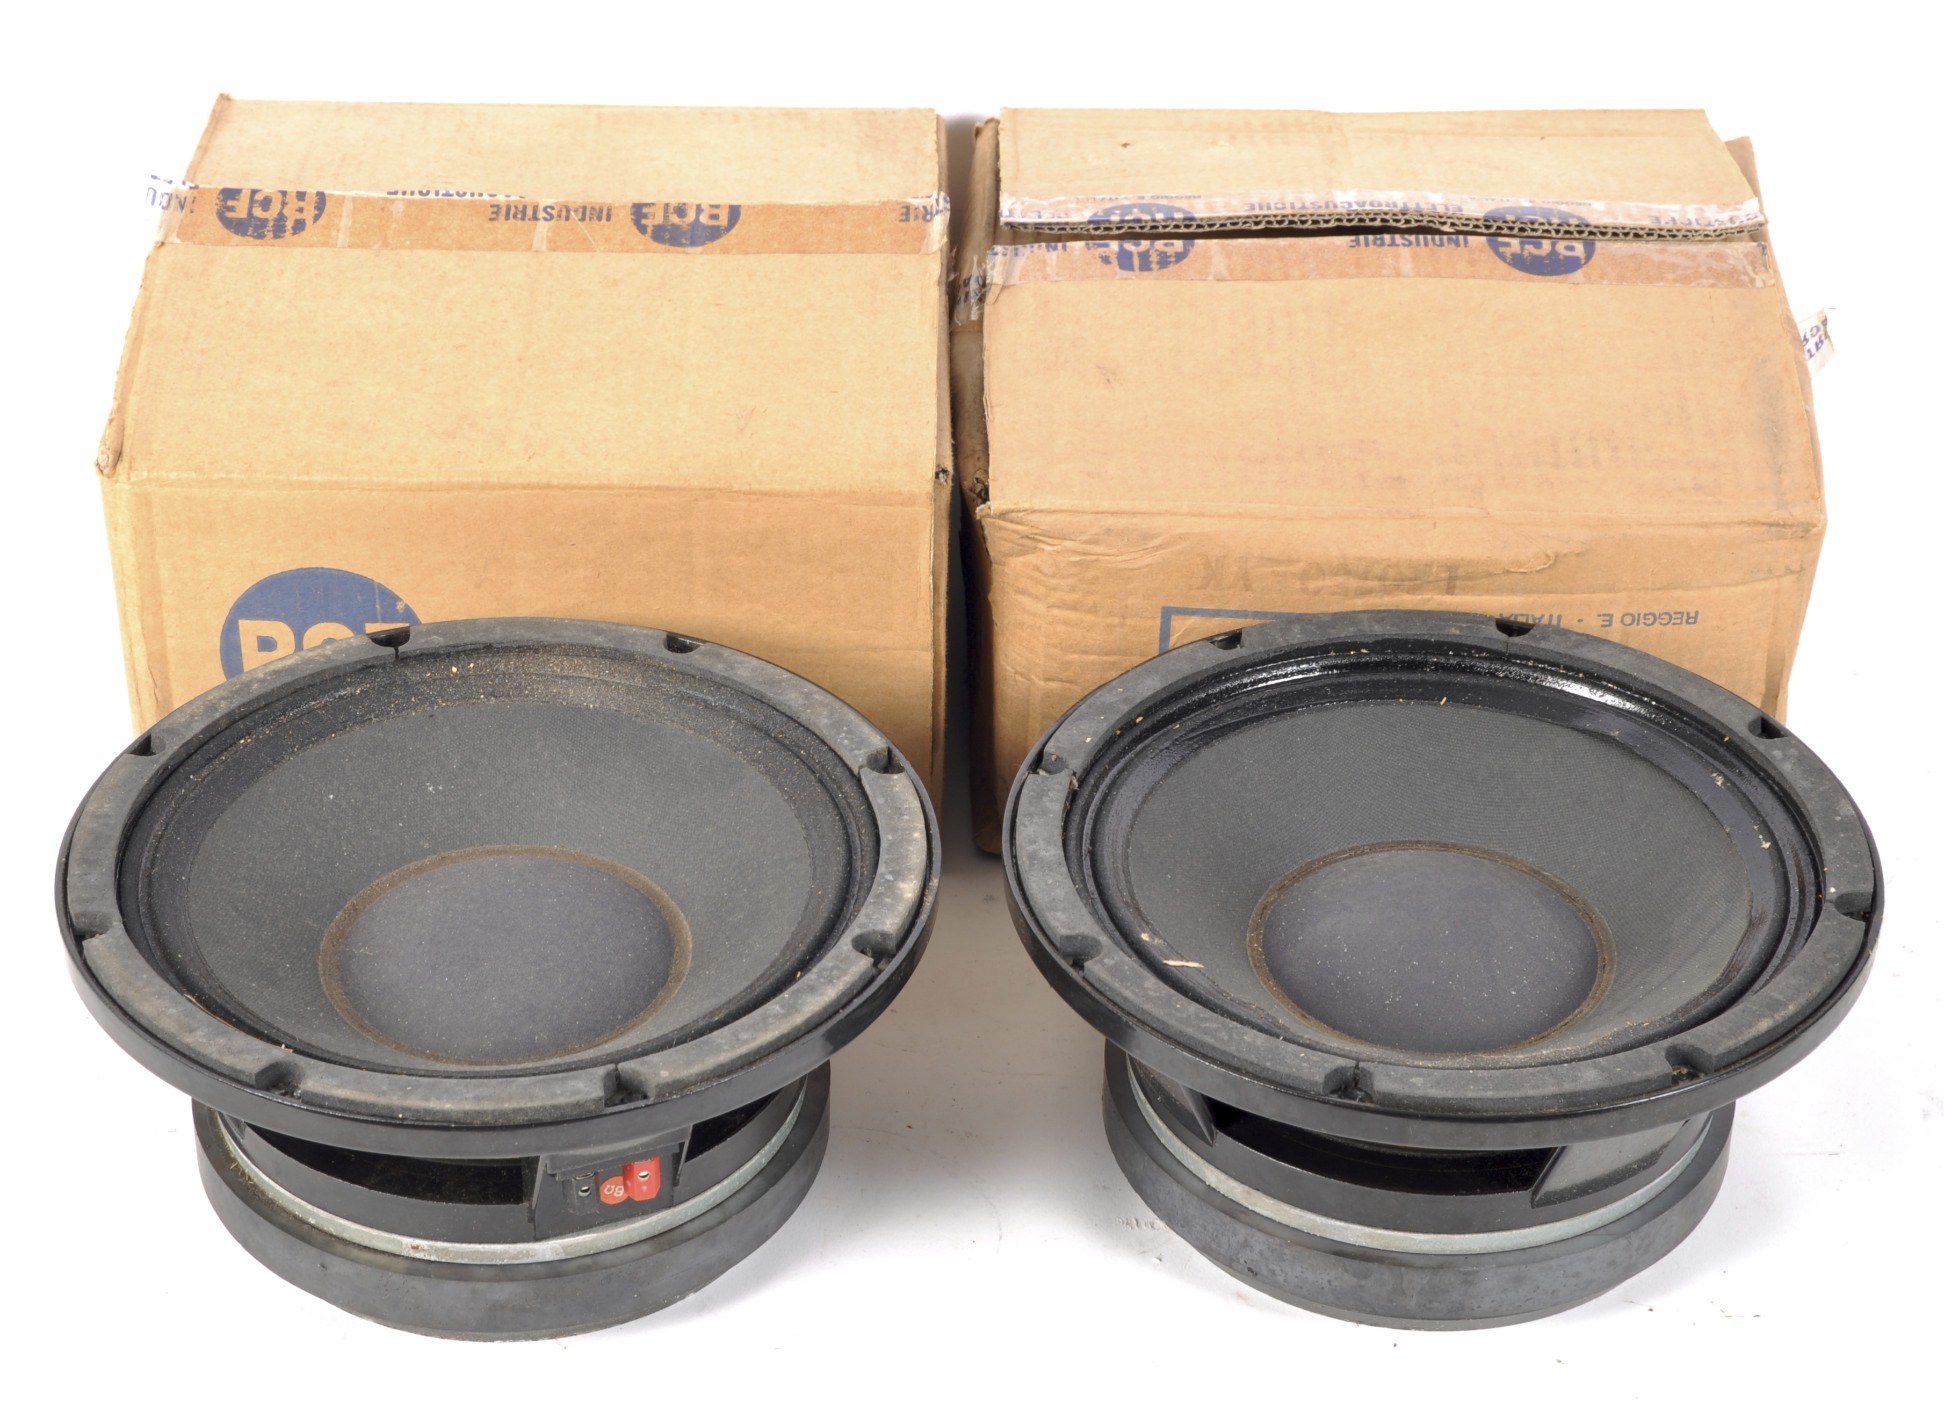 A pair of RCF speakers, model no. L10-750 Y, 26cm diameter